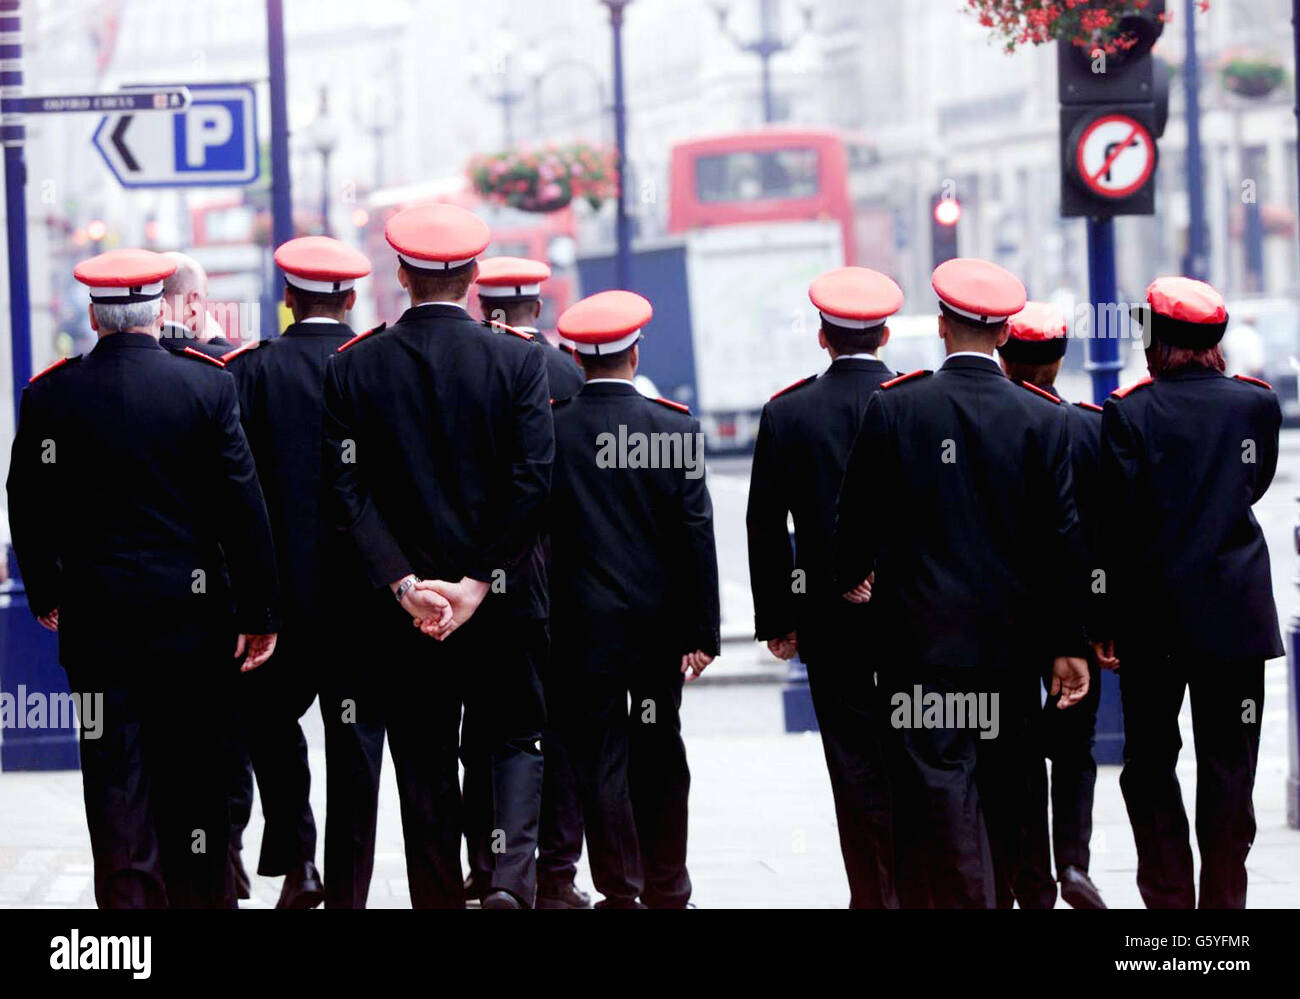 Los guardianes de la calle, que trabajarán en asociación con la Policía Metropolitana actuando como sus ojos y oídos, posan en sus gorras rojas y uniformes. Su parche cubrirá el distrito comercial de Londres de Oxford Street, Regent Street y Bond Street. * Veinticinco gorras rojas completamente entrenadas toman las calles por primera vez. Foto de stock